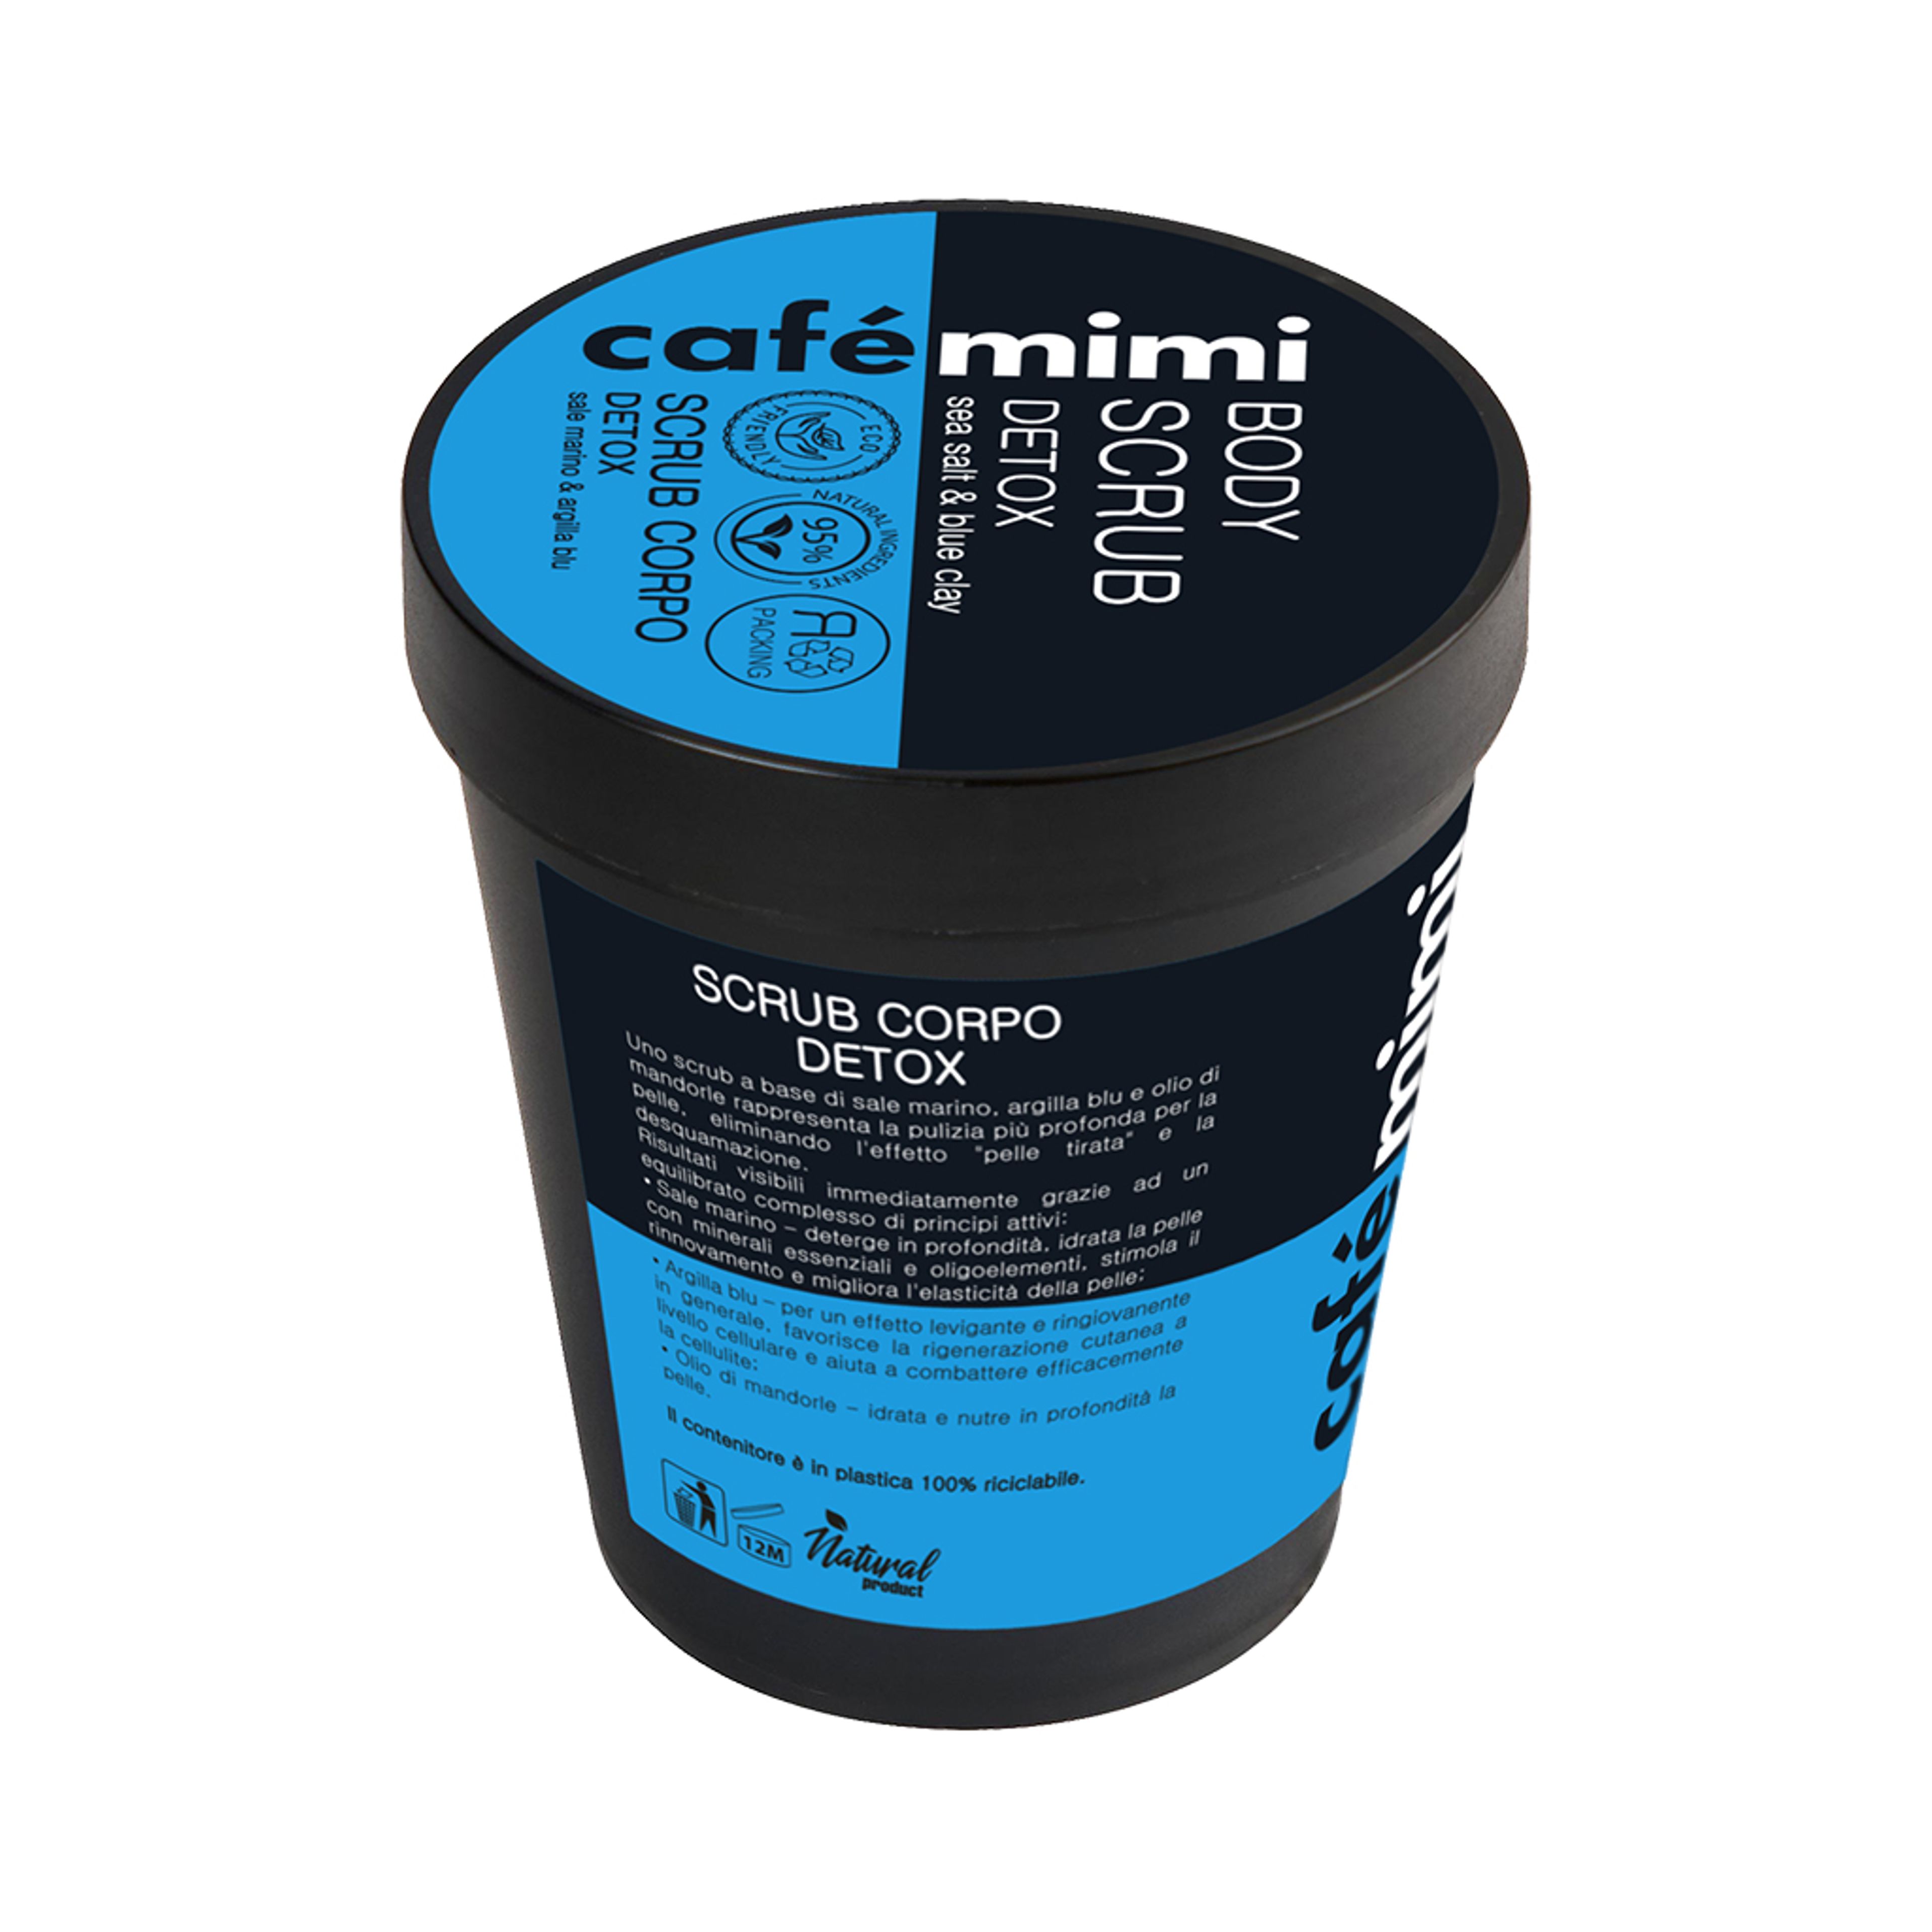 Scrub Corpo Detox
sale Marino & Argilla Blu Café Mimi 2